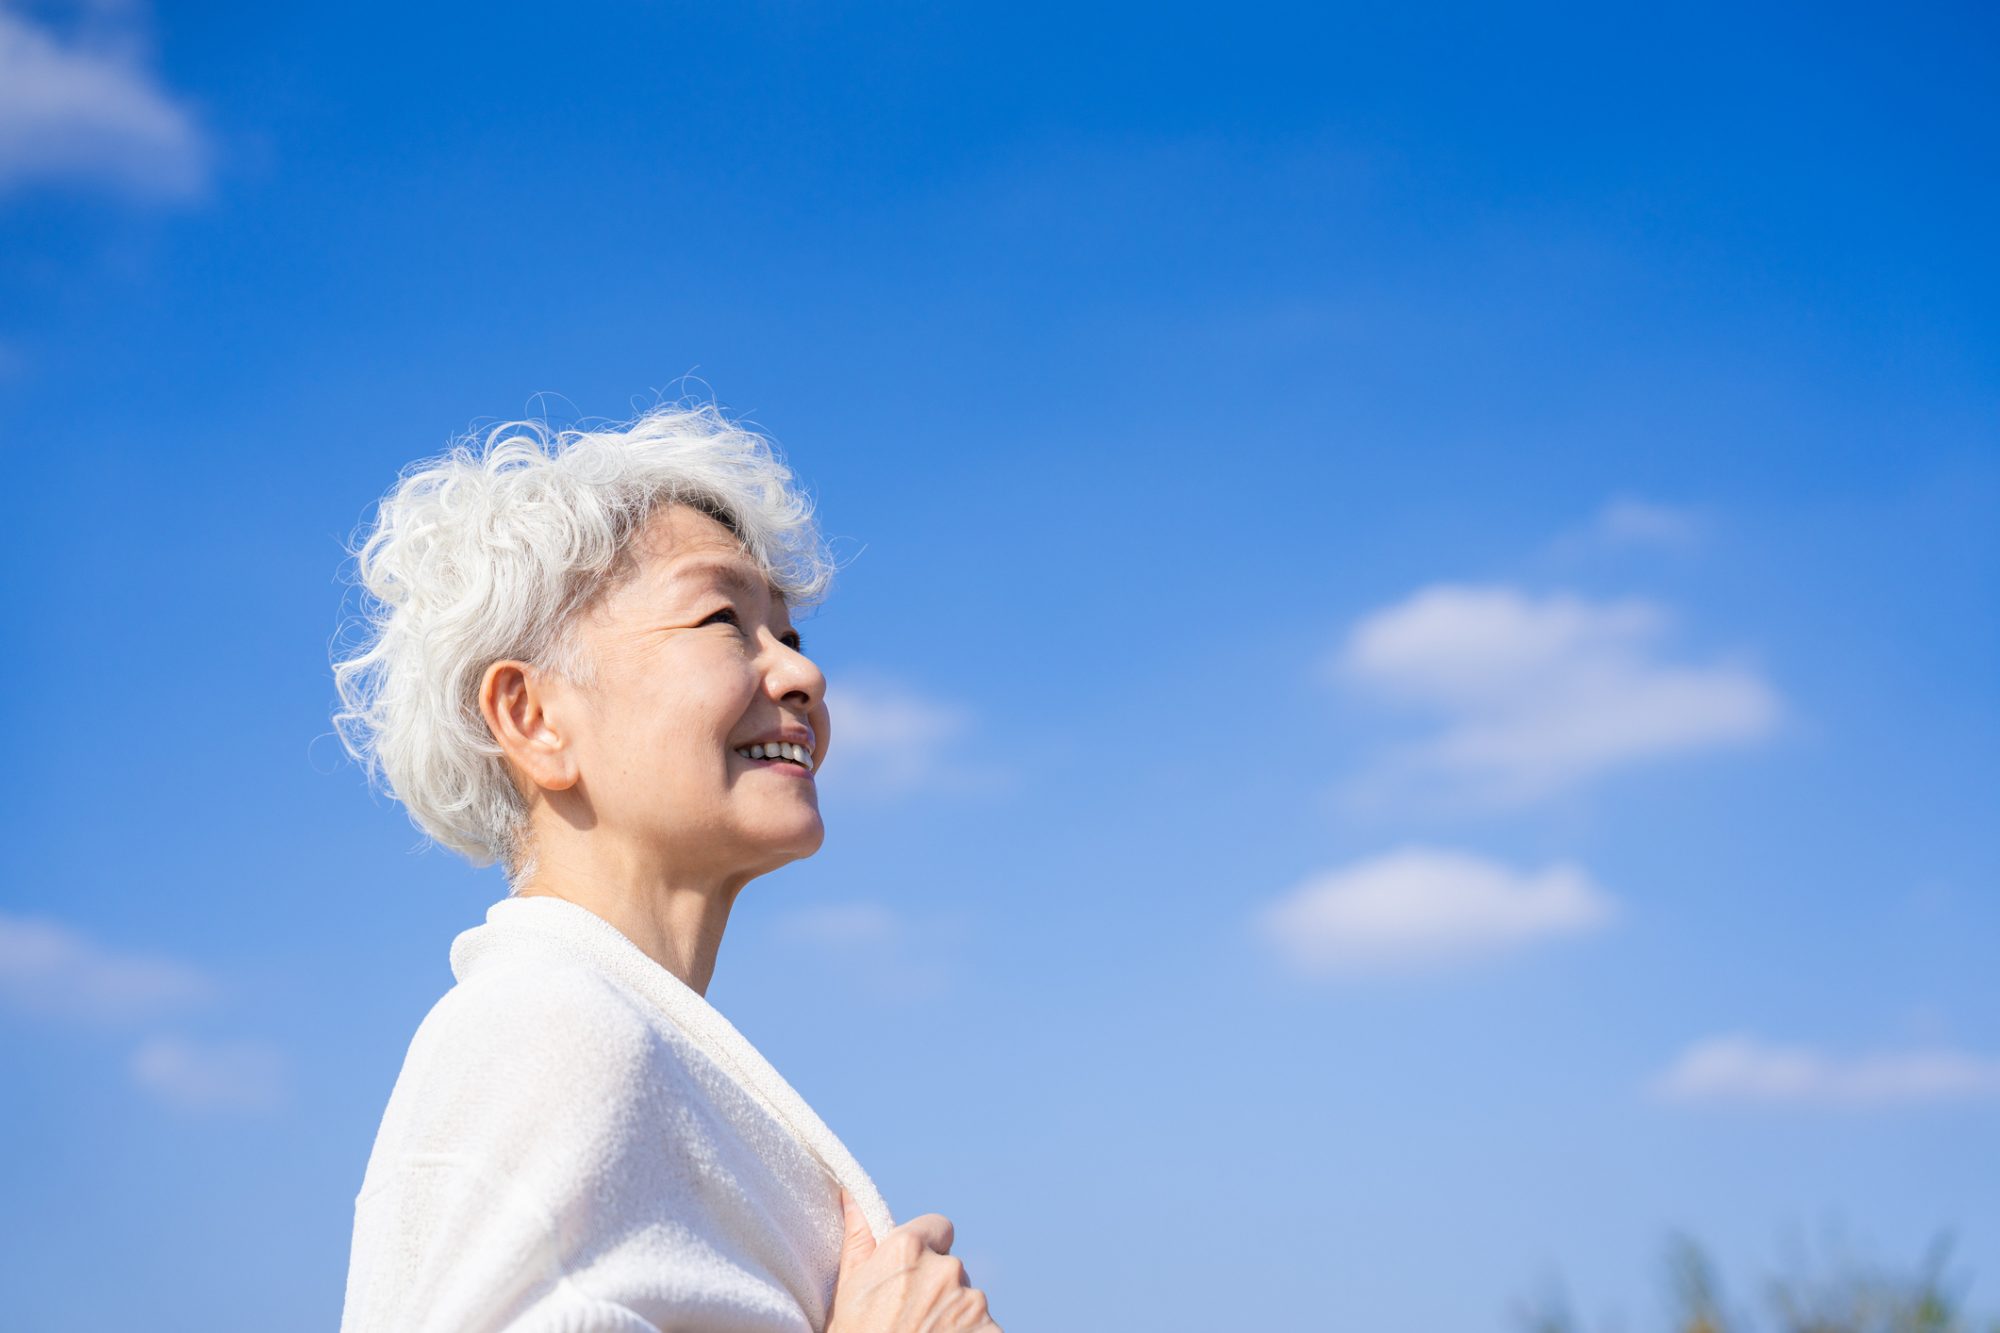 日本が健康的な高齢化に向けて針を進めるのに、研究はどのように役立つのか